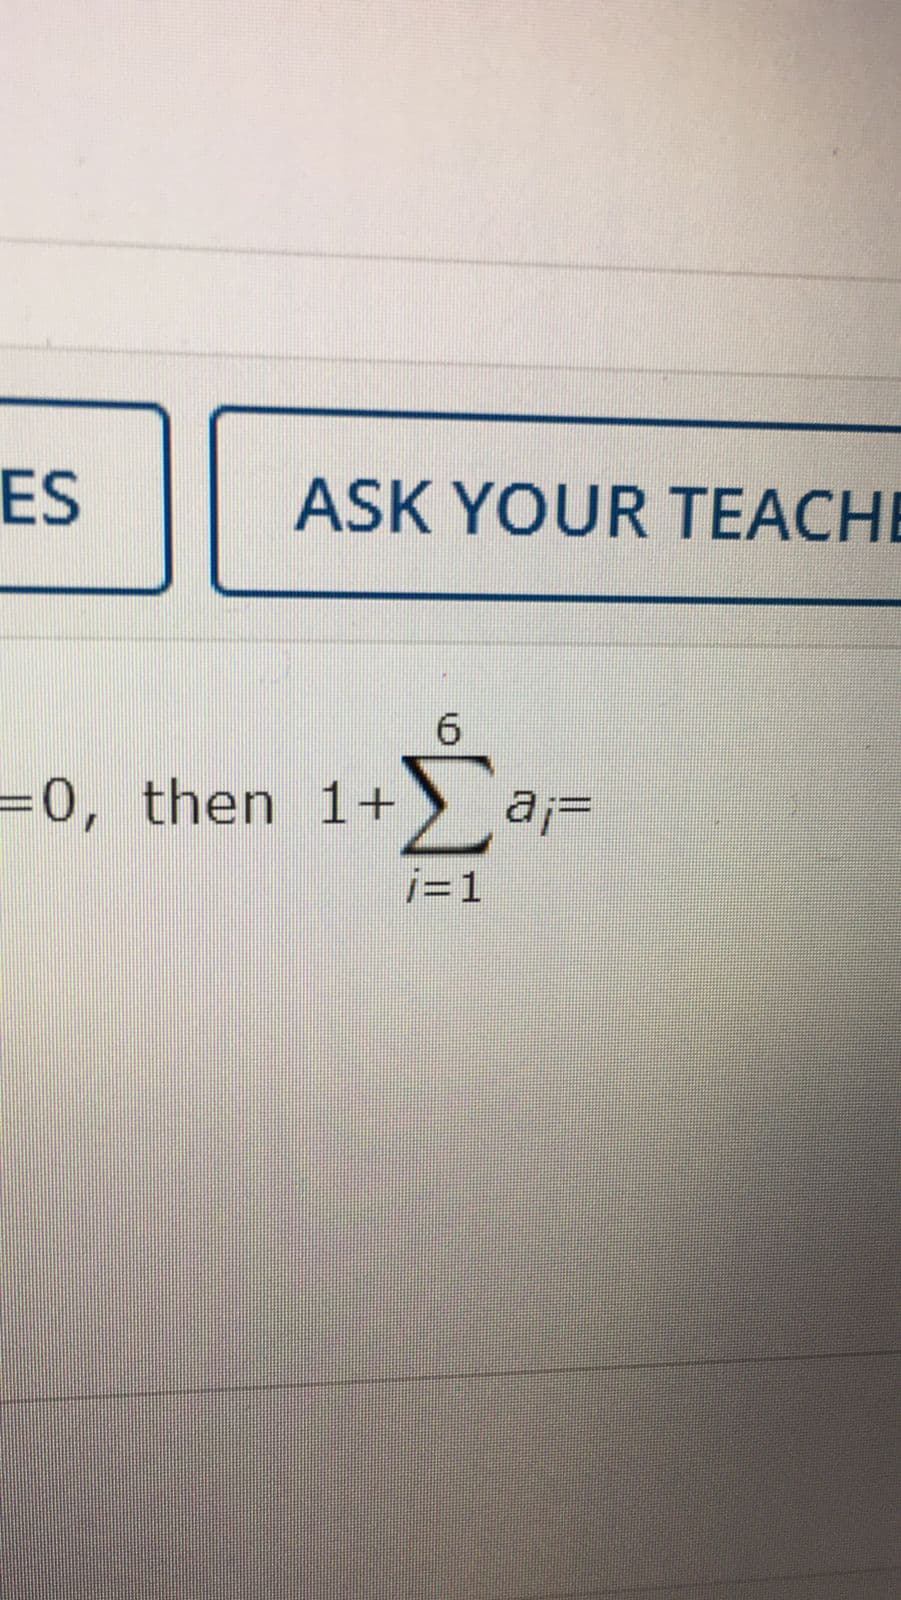 ES
ASK YOUR TEACHE
6.
=0, then 1+
j=1
